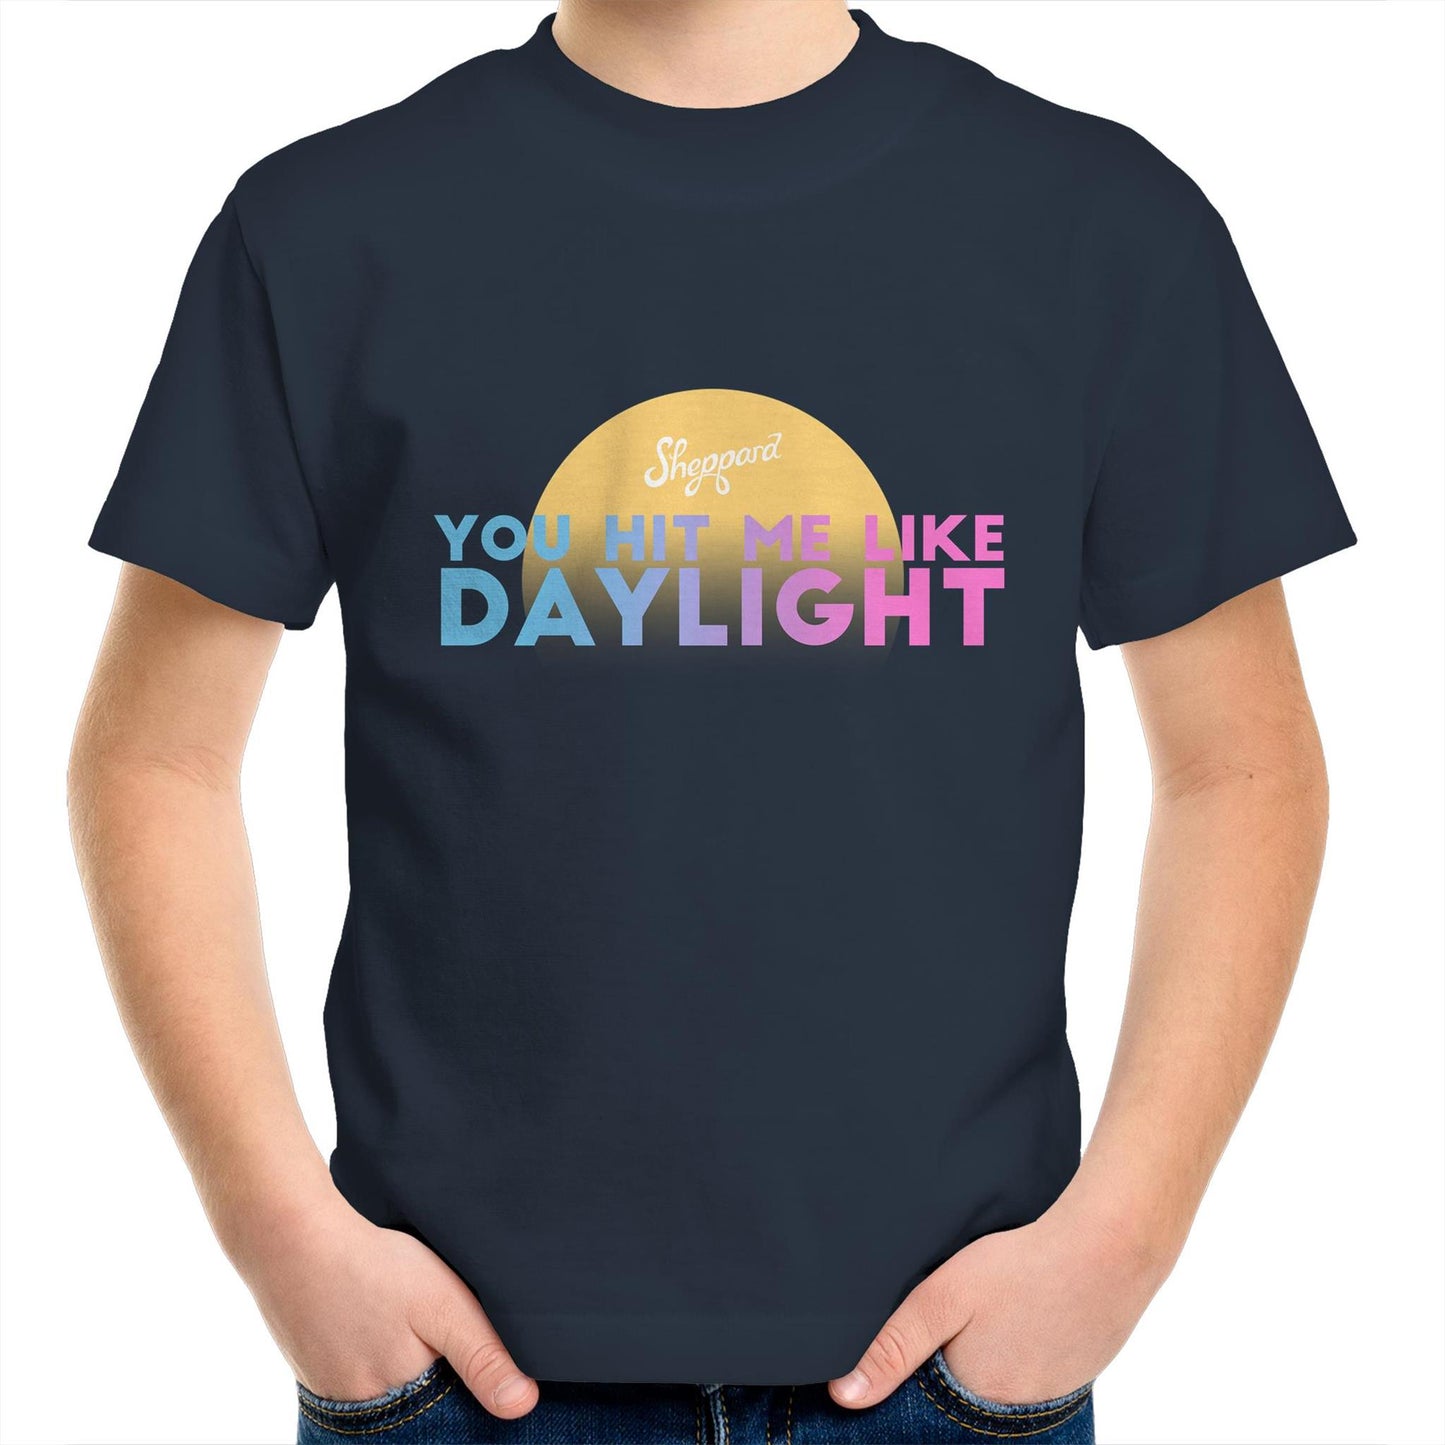 NEW! Daylight - Kids T-Shirt